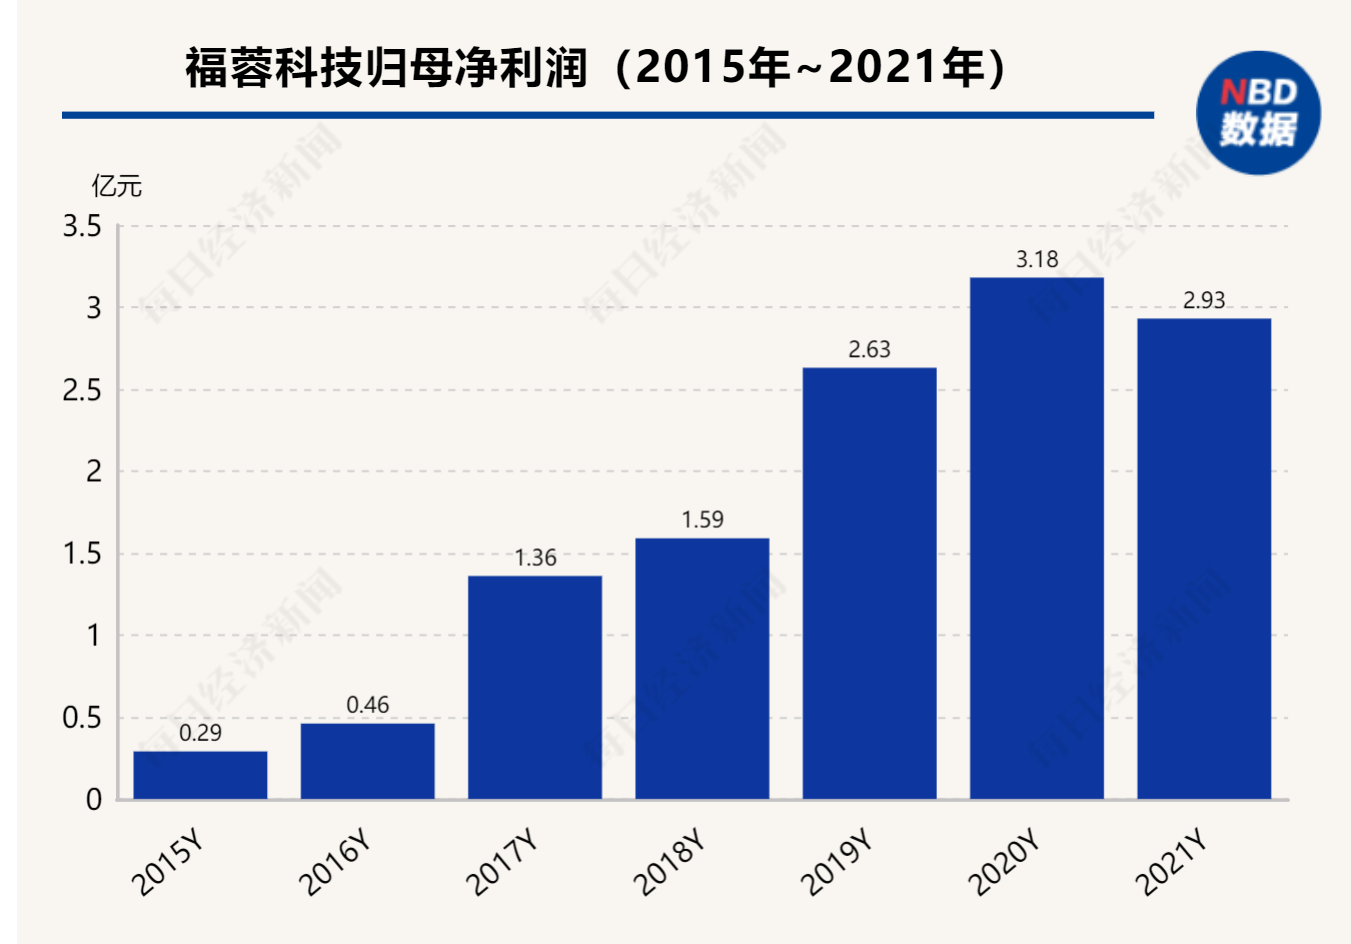 铝价上涨压缩利润福蓉科技去年增收不增利